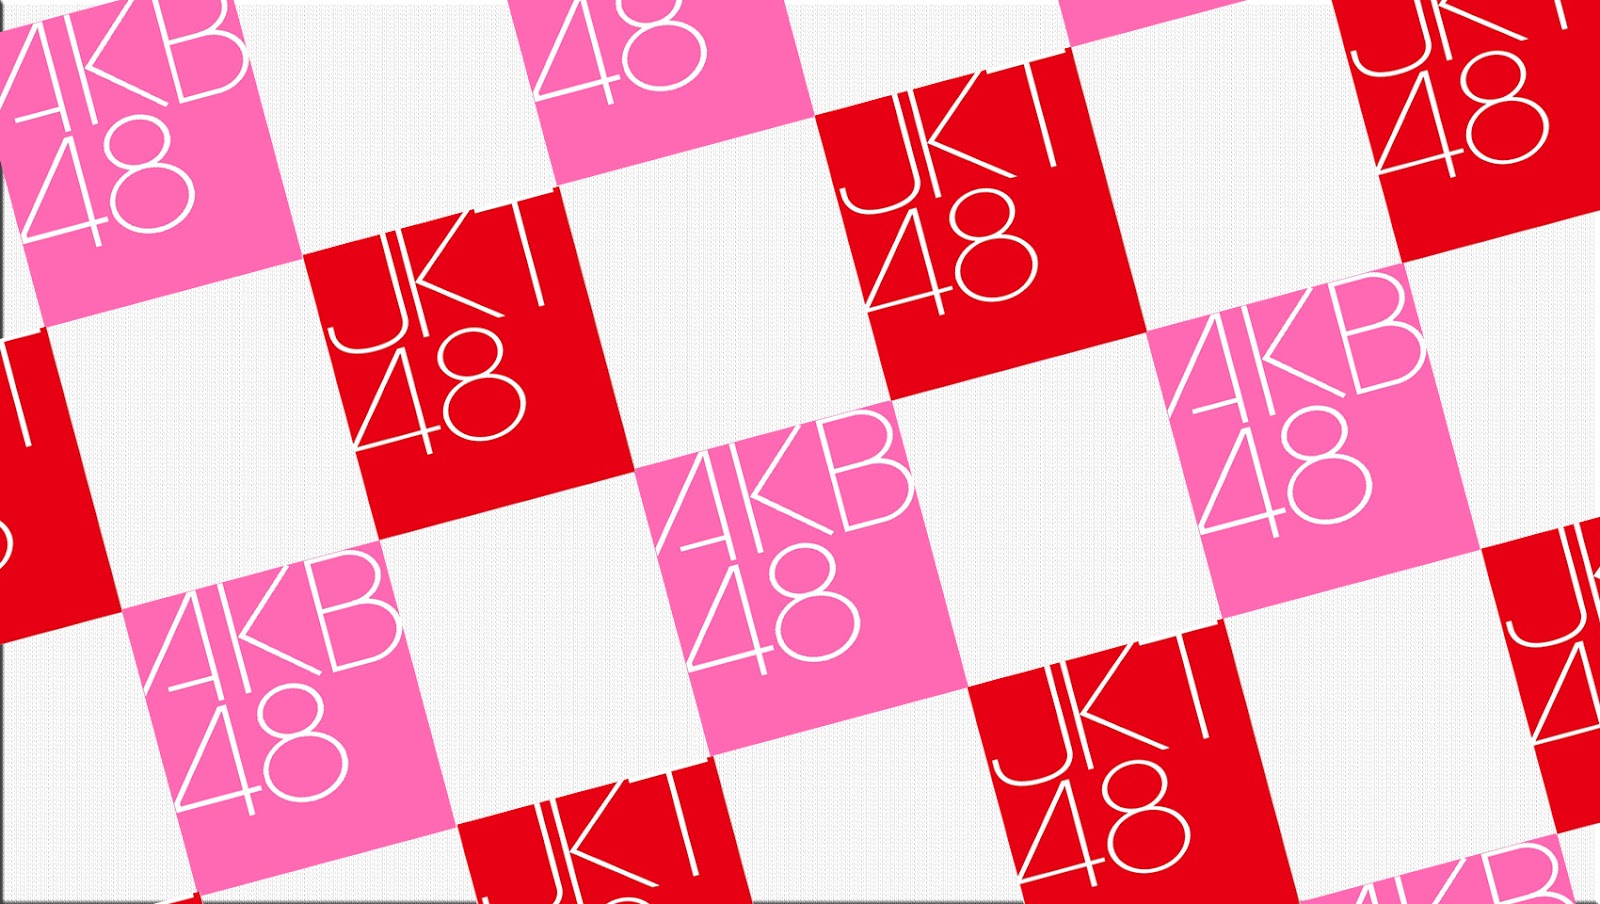 Akb48 Wallpaper Download